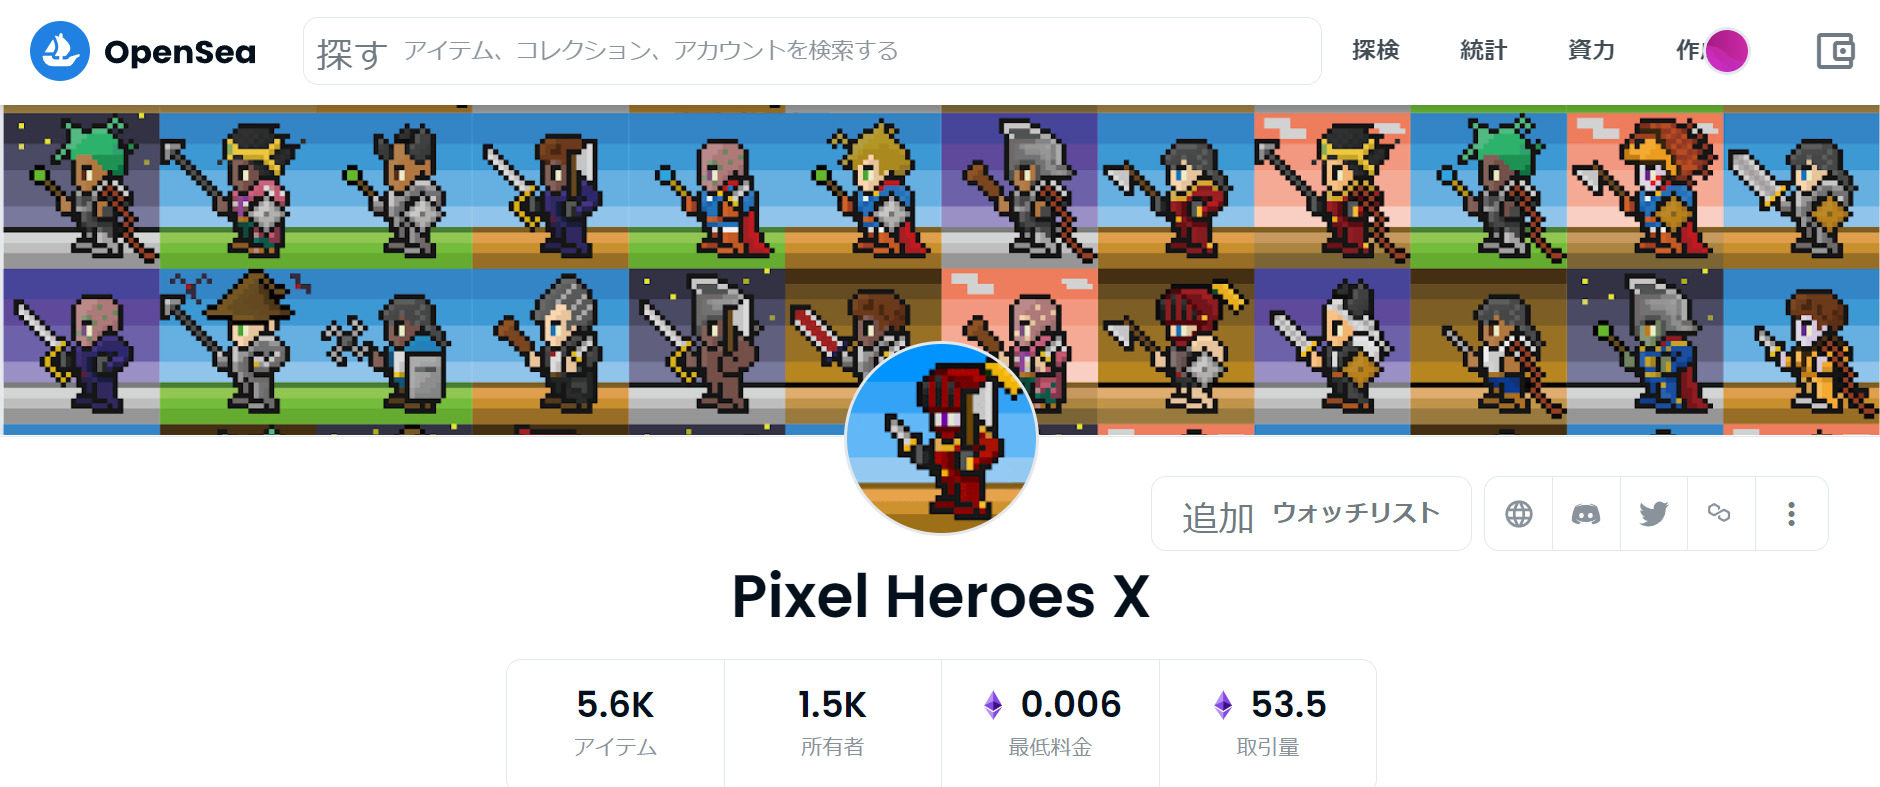 Pixel Heroes Xのページ